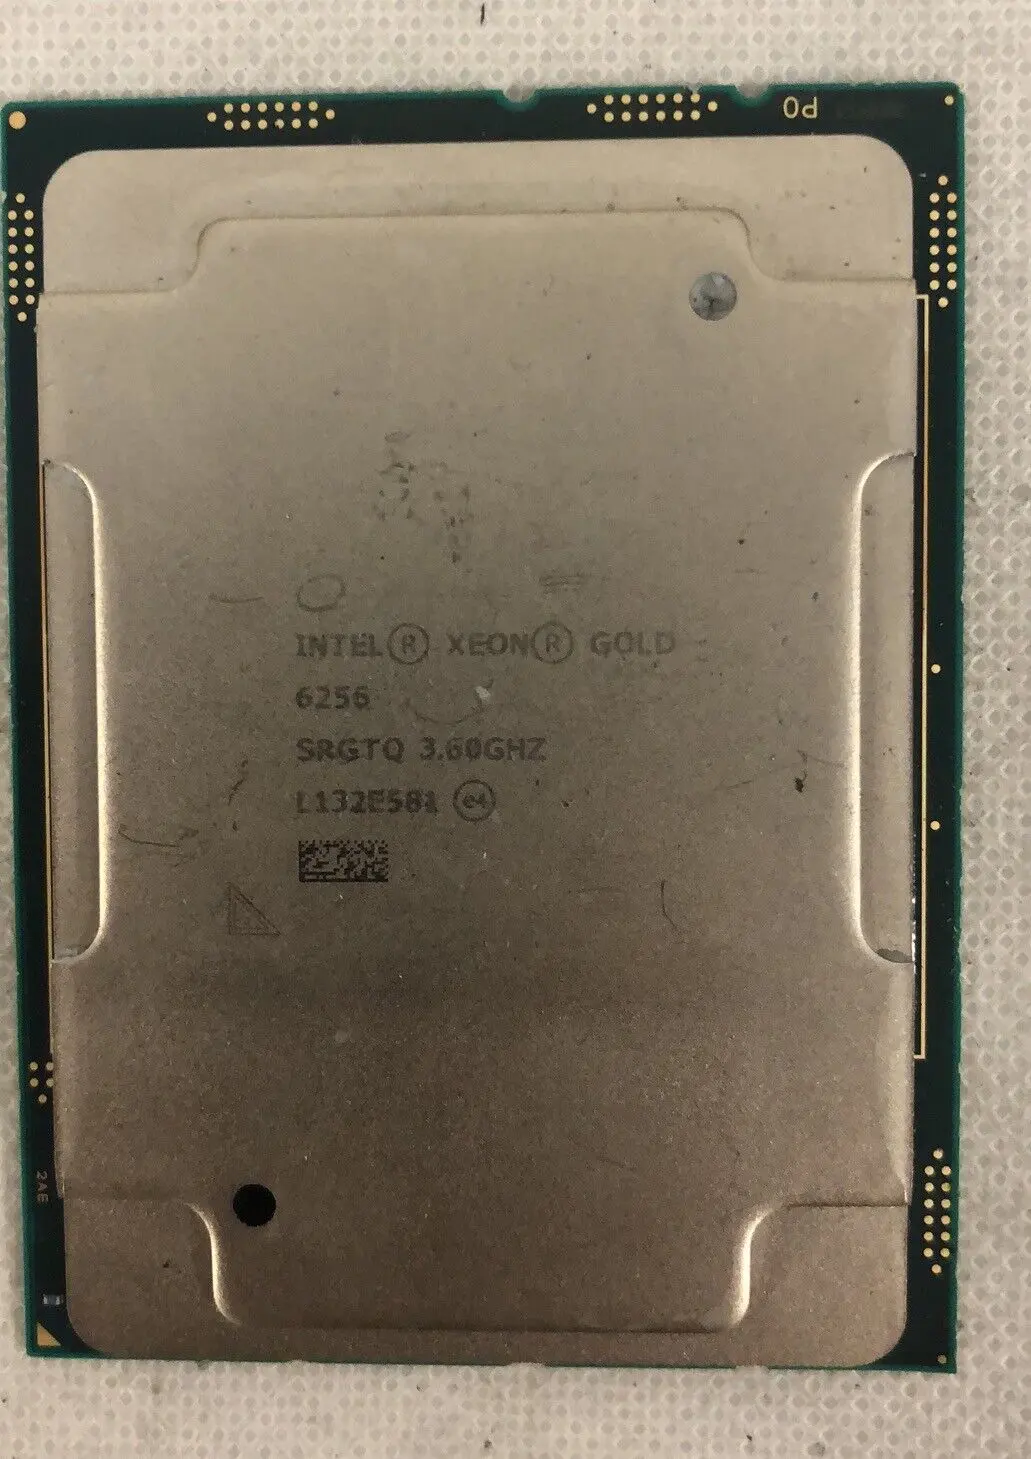 Intel Xeon Gold 12-core W W W GHz 33M f3647